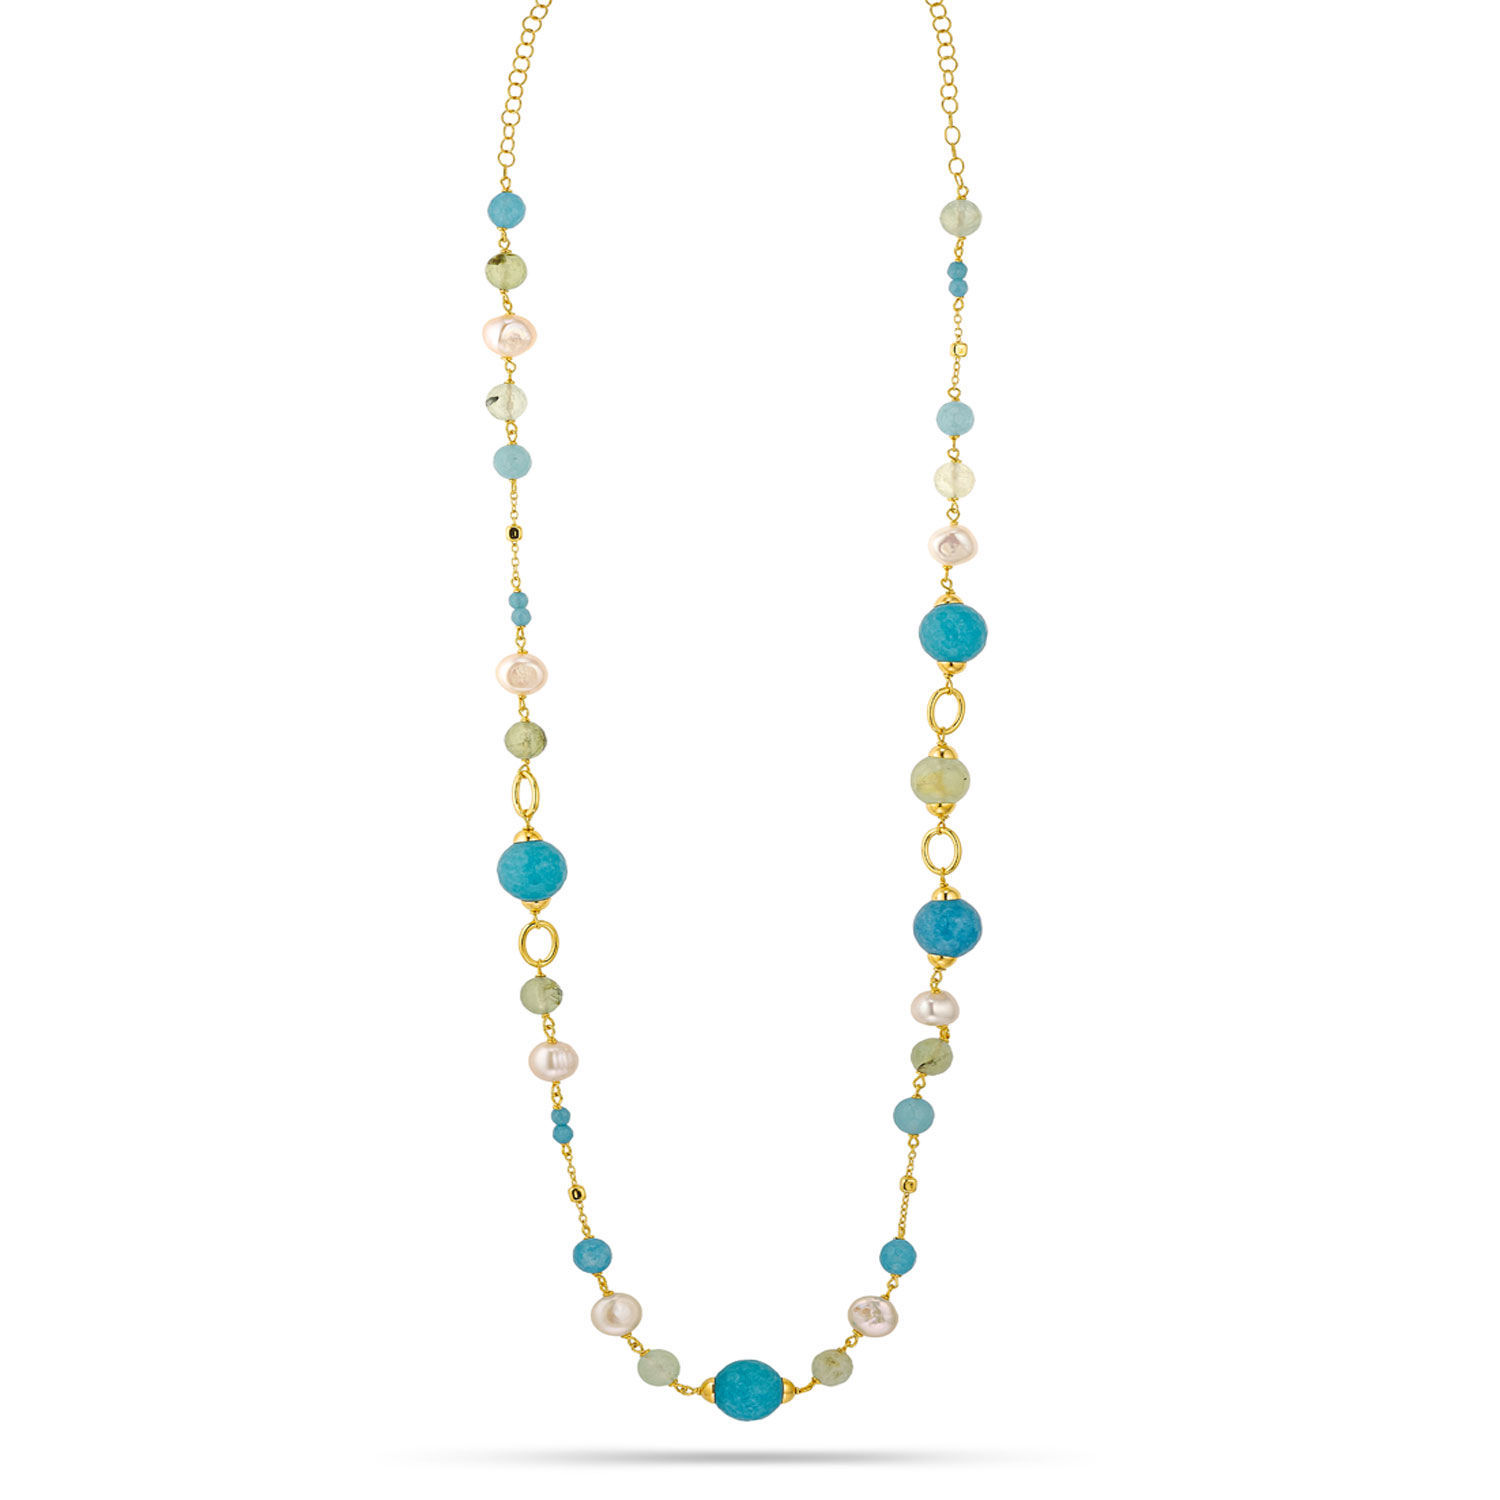 Κολιέ Swing από επιχρυσωμένο ασήμι 925° με freshwater pearls, blue quartz και πρενίτη